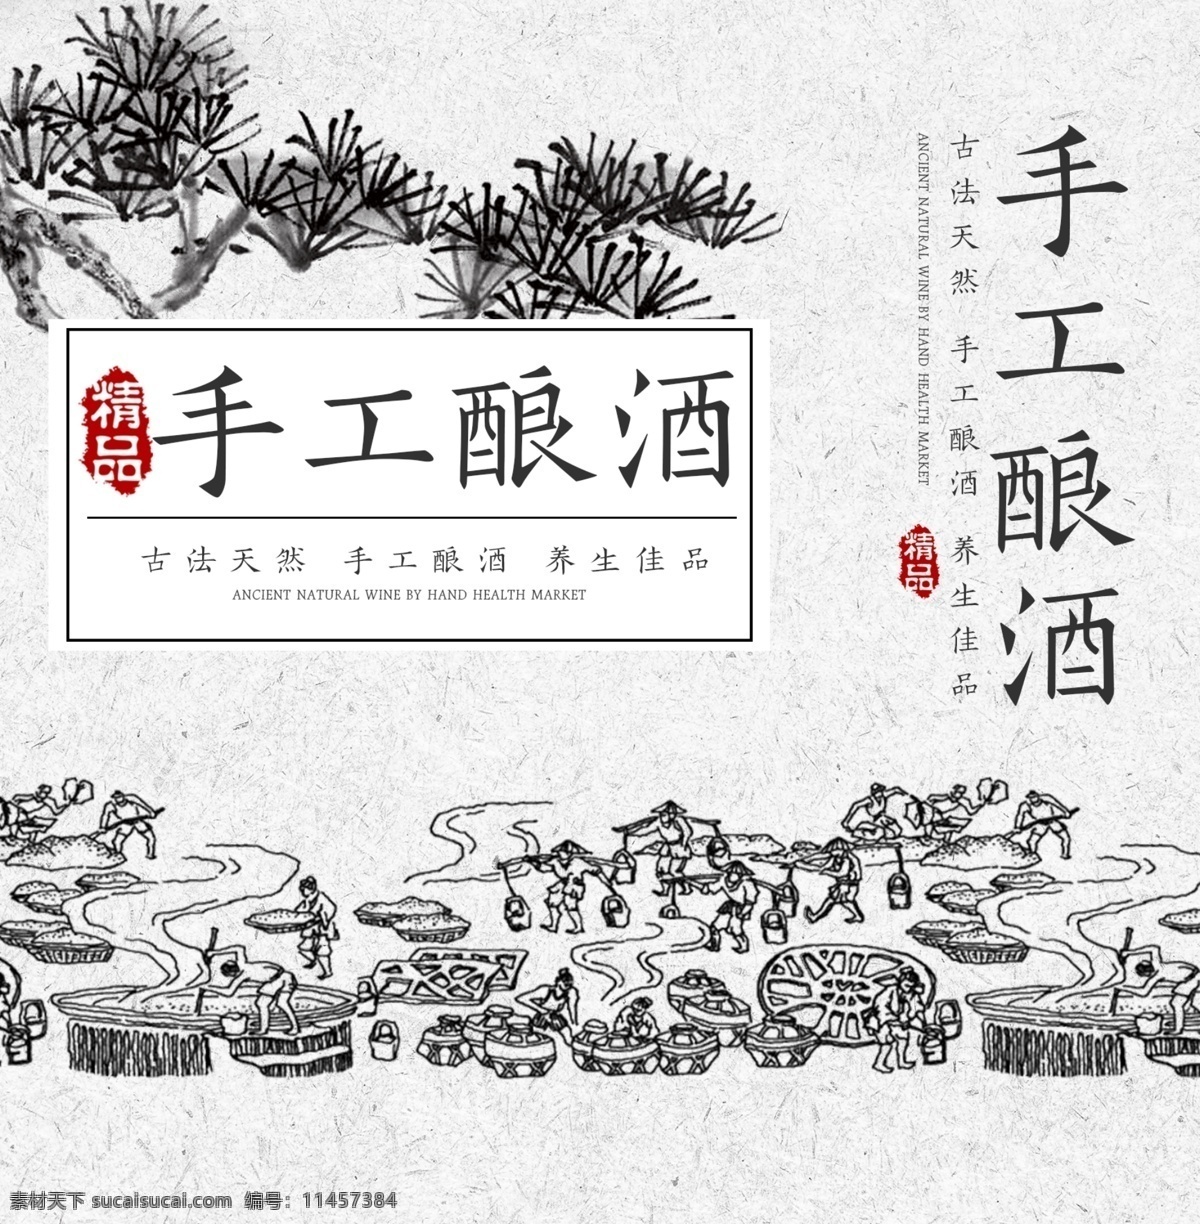 精品 手提袋 白色 中国 风 古法 酿酒 包装设计 酒品 年货 古方 传统 中国风